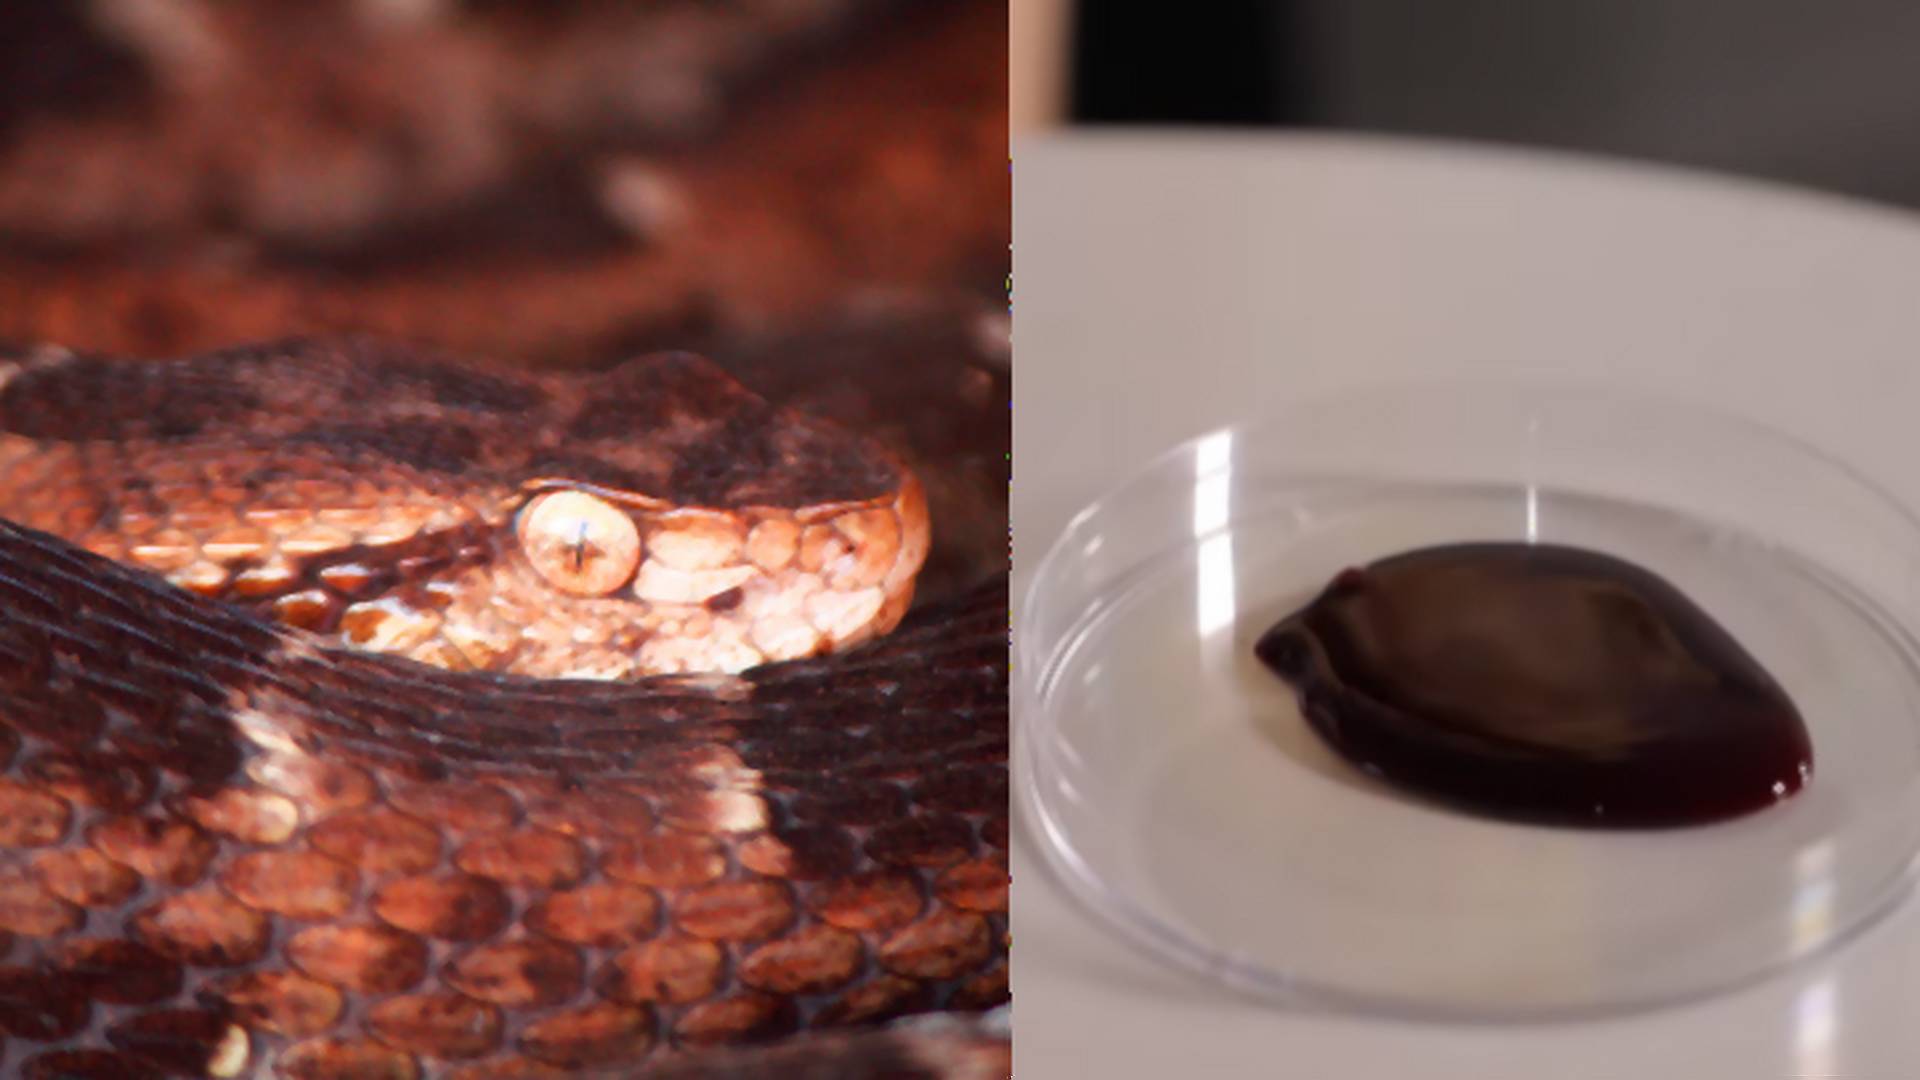 Co jad węża robi z krwią człowieka? Teraz wiemy, dlaczego te gady są tak niebezpieczne